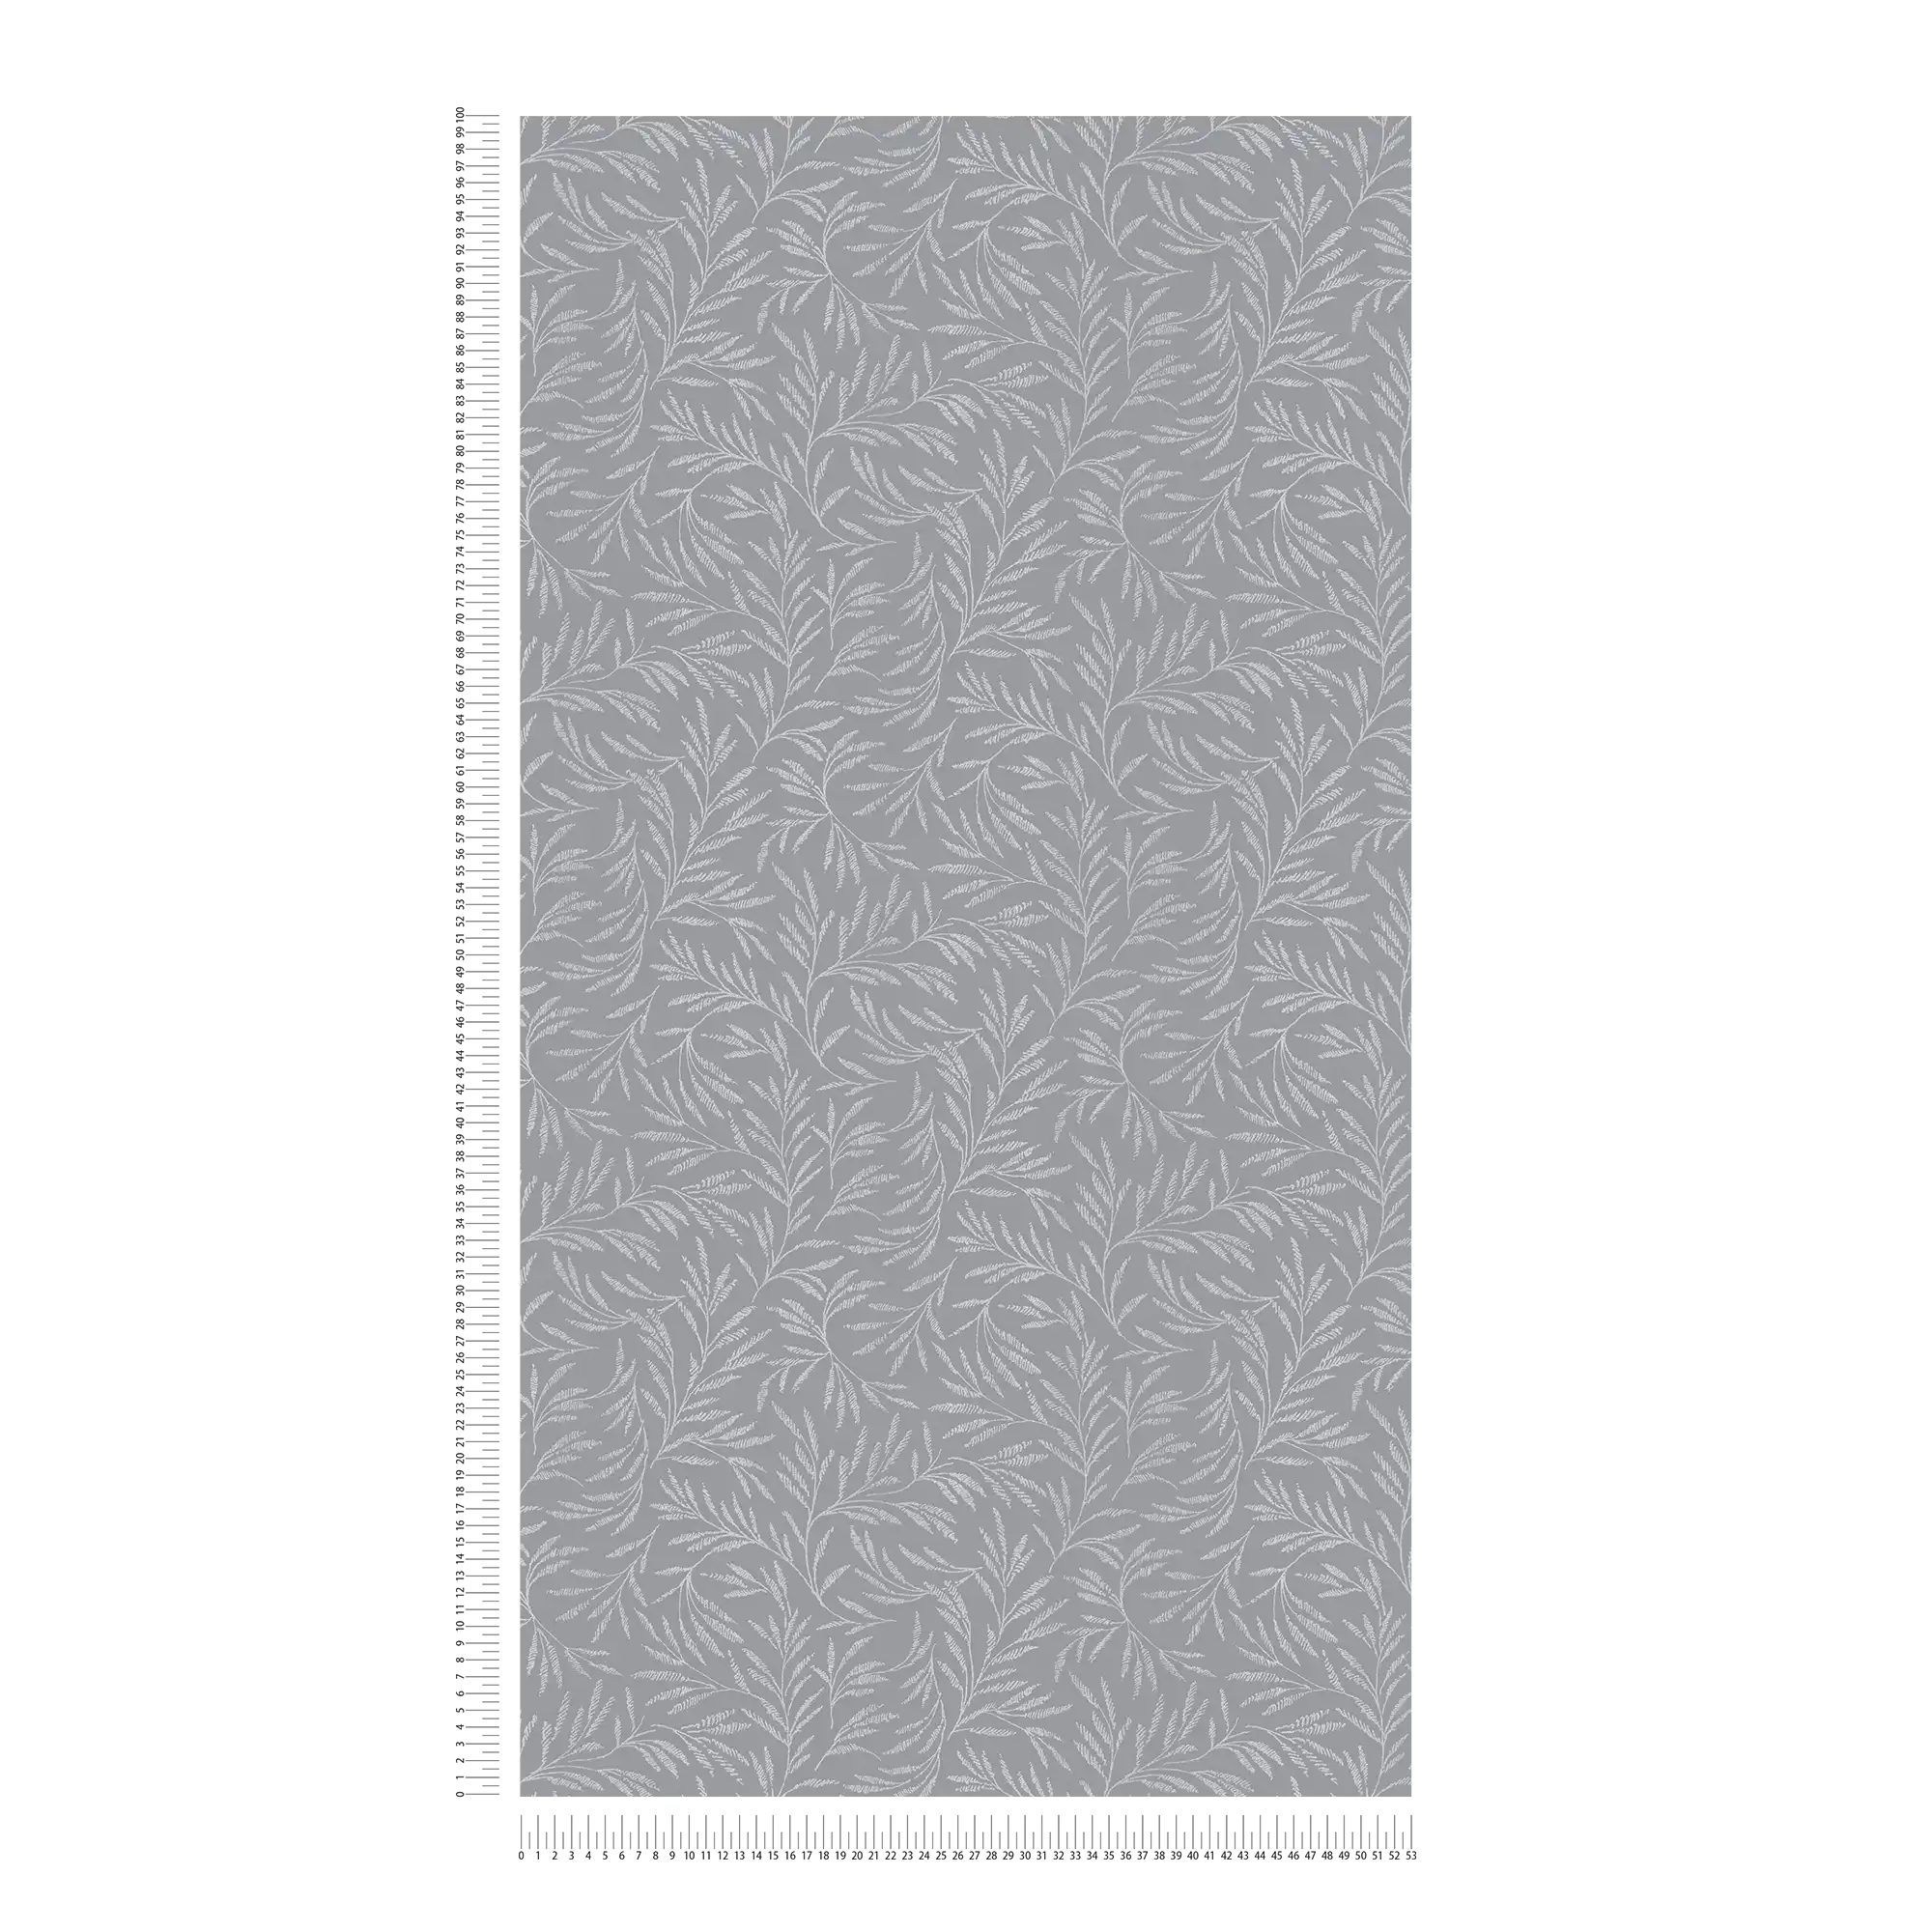             Grijs vliesbehang met zilveren bladmotief
        